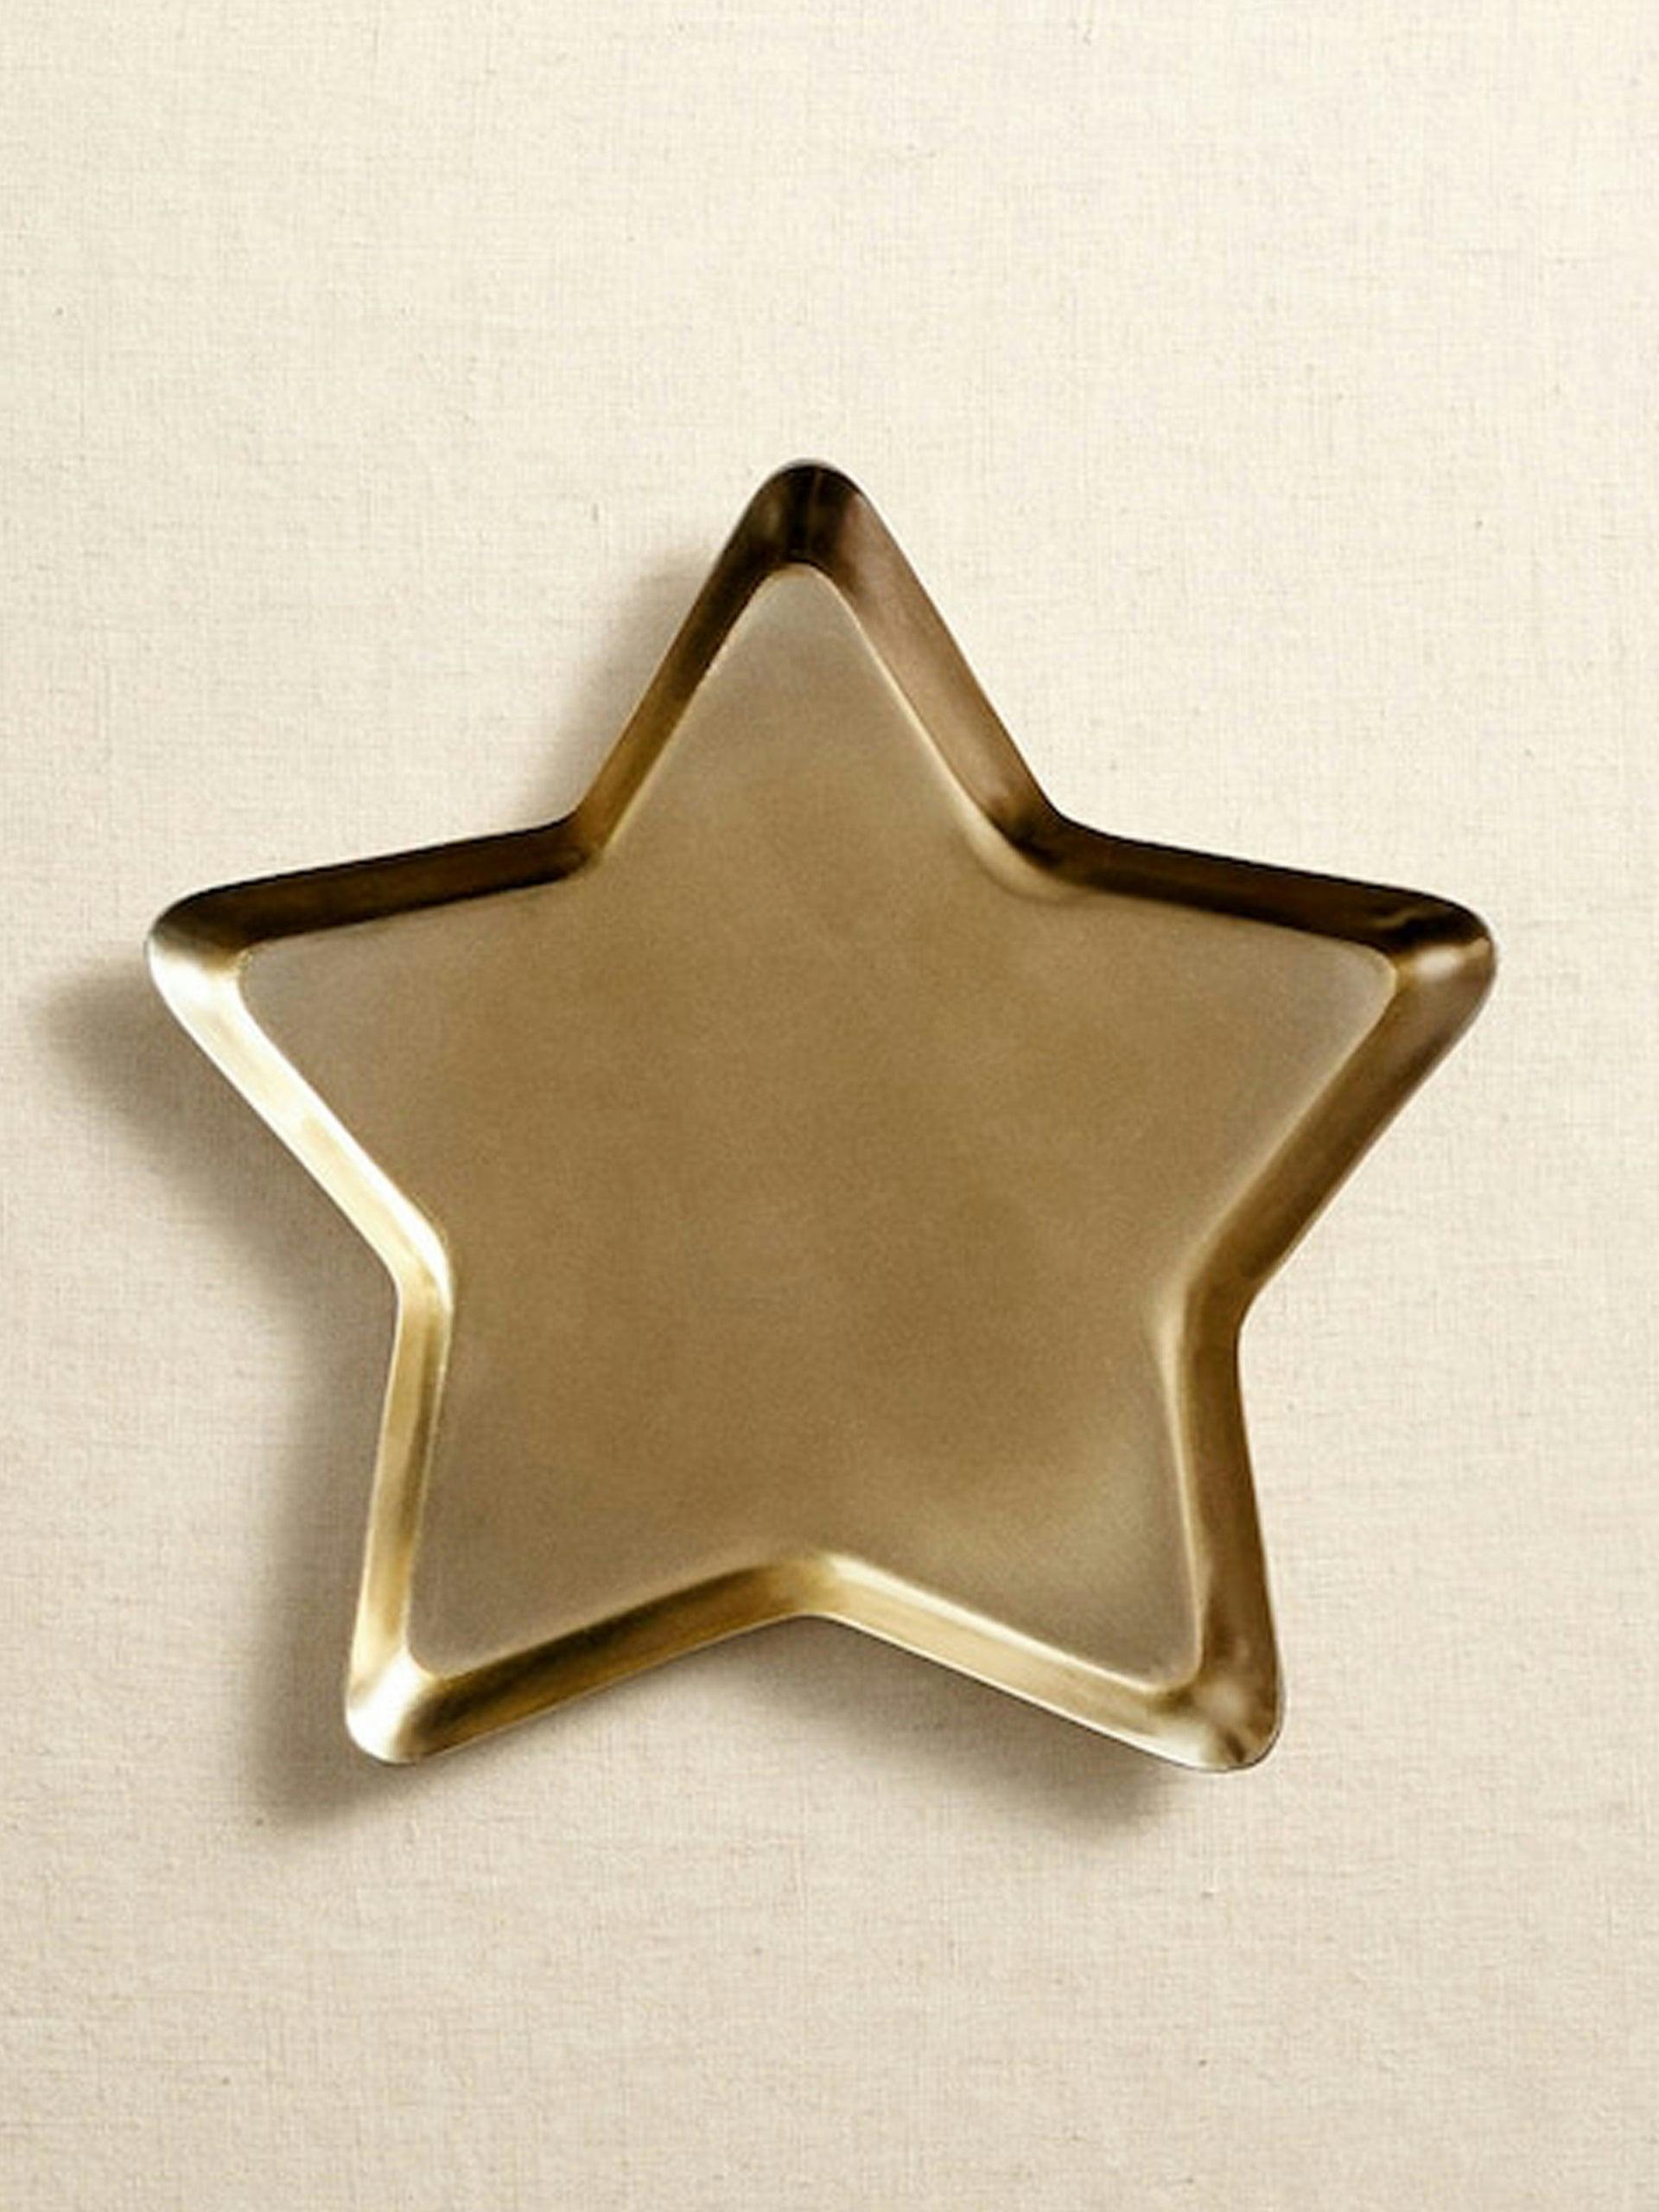 Star shaped tray